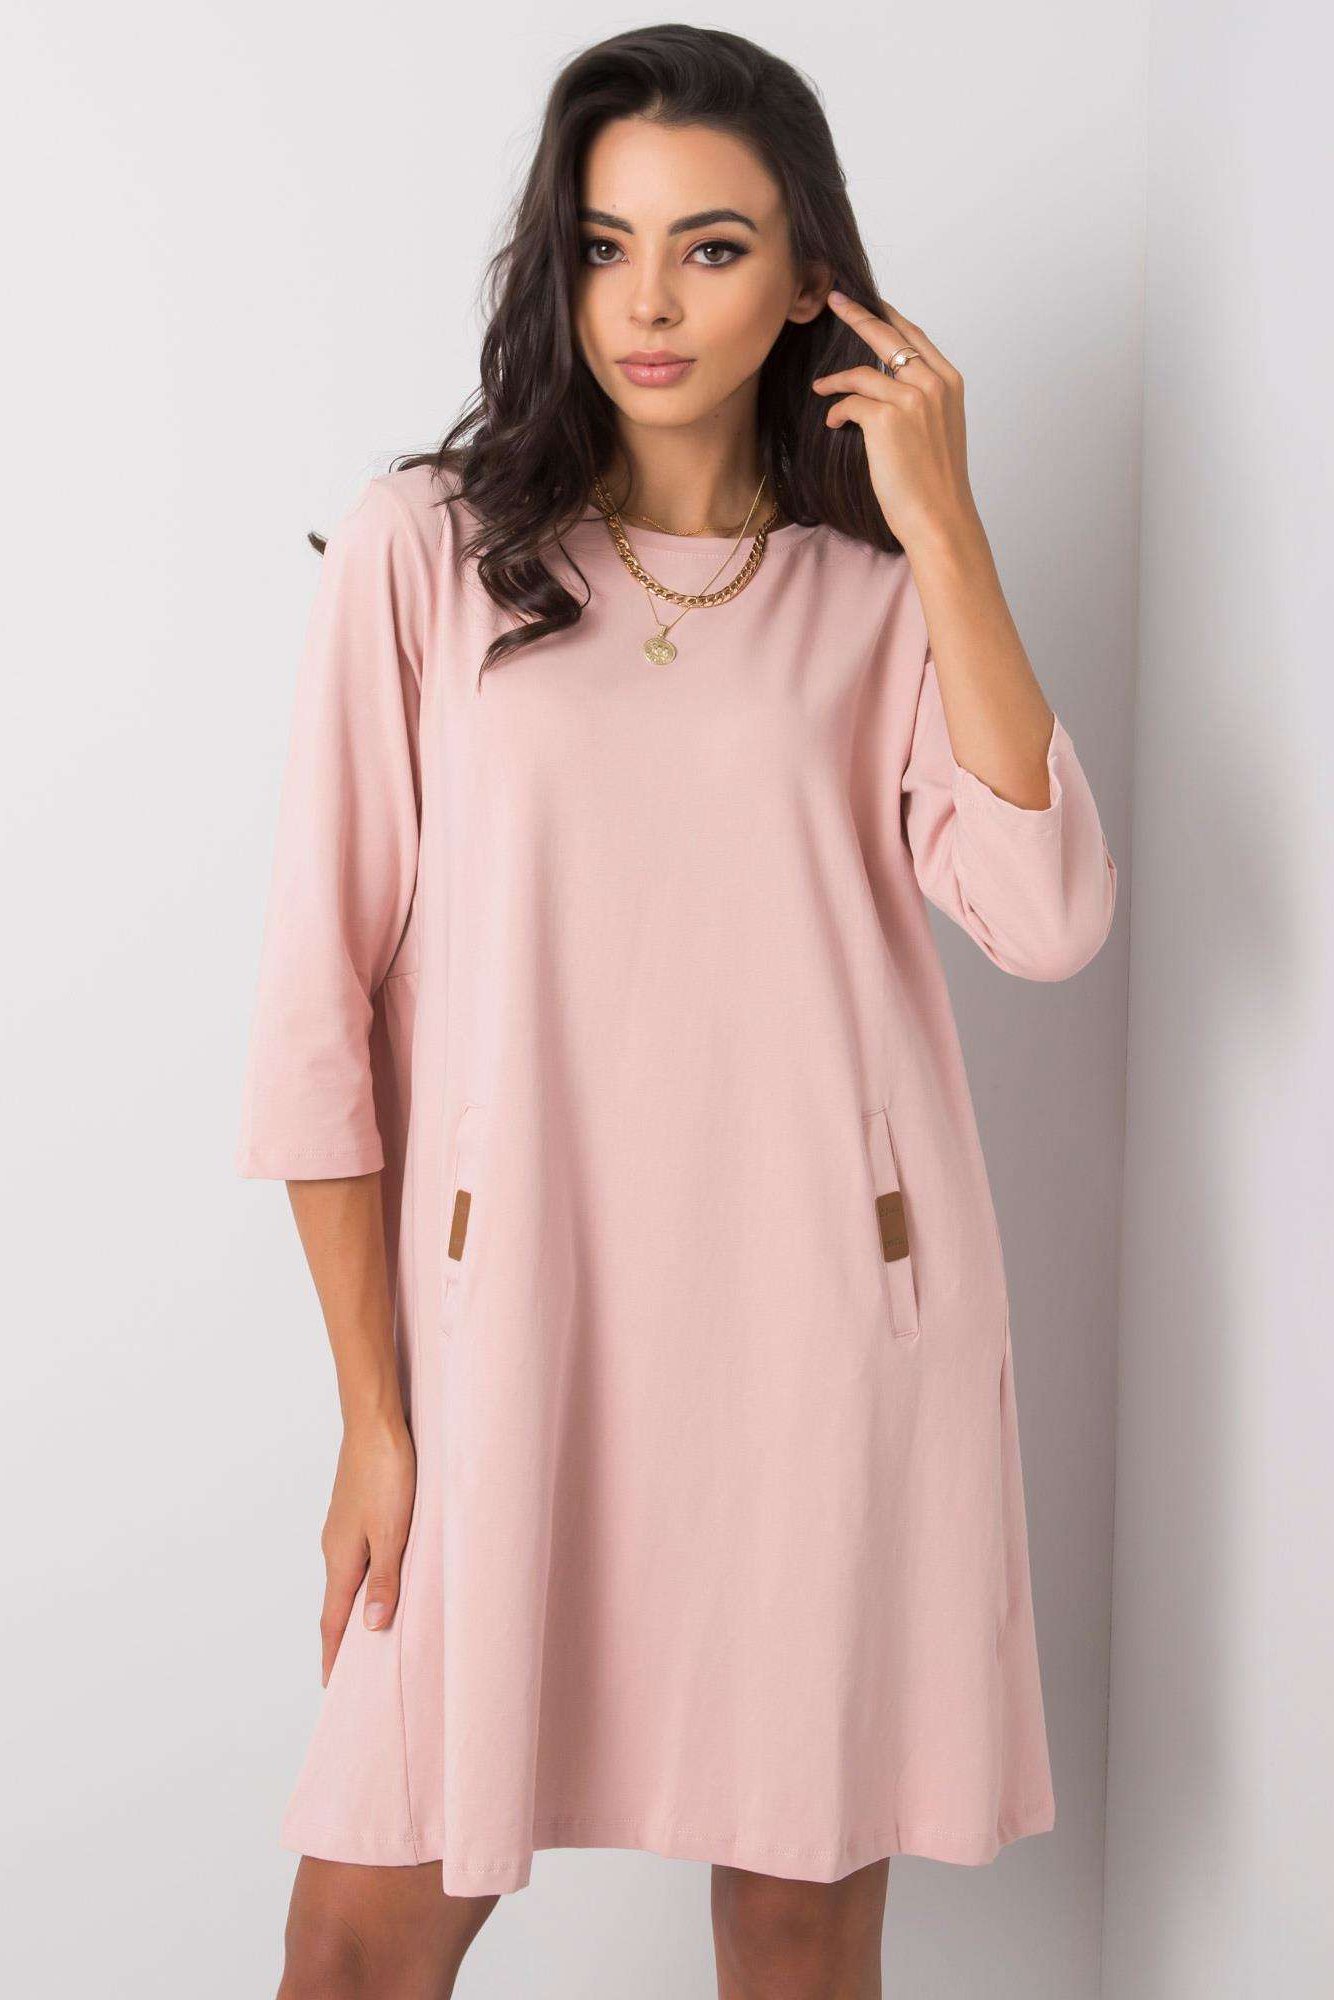 RELEVANCE Bavlněné šaty Gianna světle růžové Velikost: L/XL